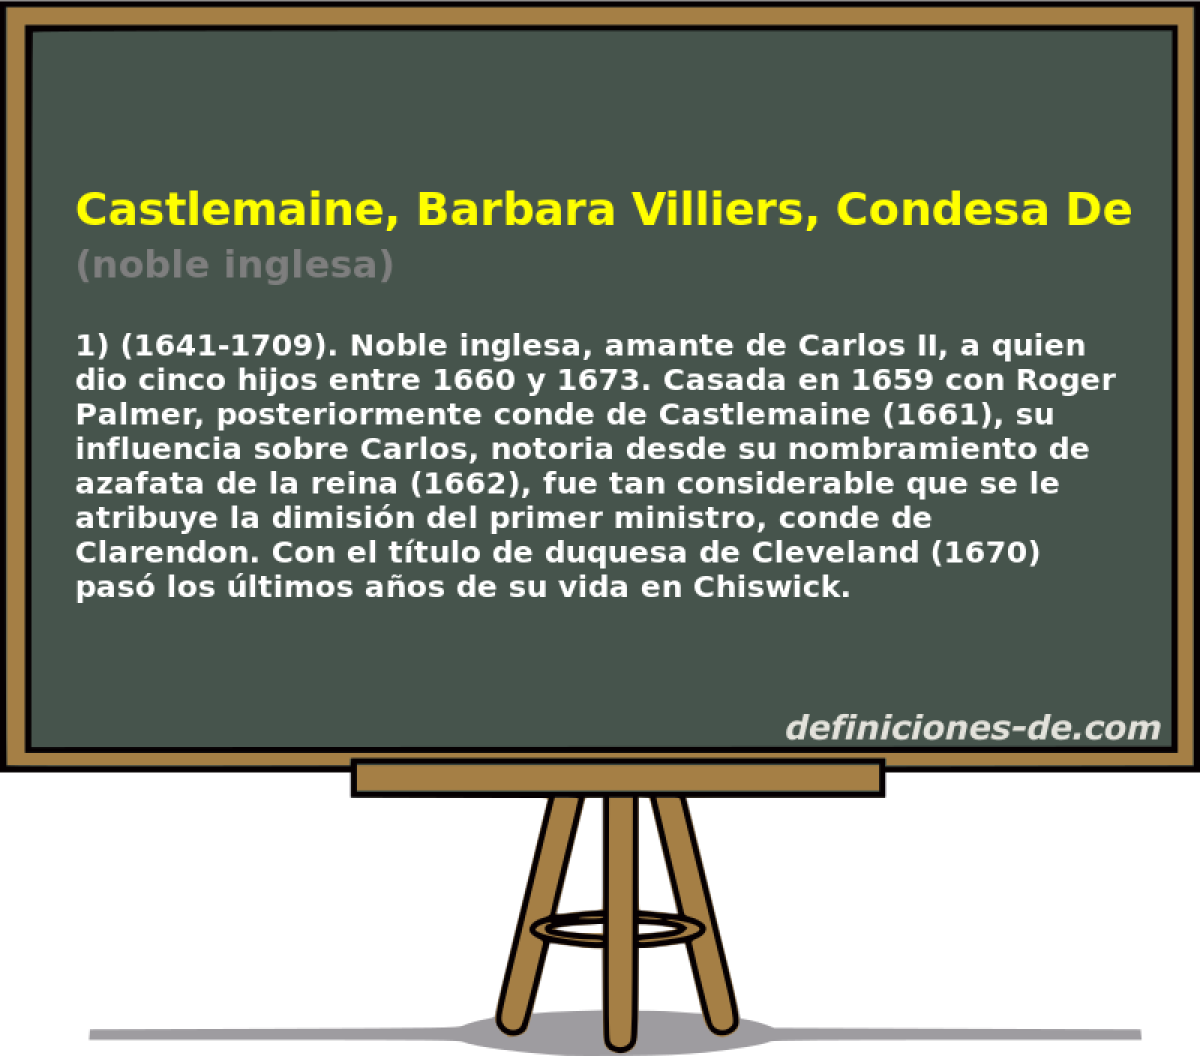 Castlemaine, Barbara Villiers, Condesa De (noble inglesa)